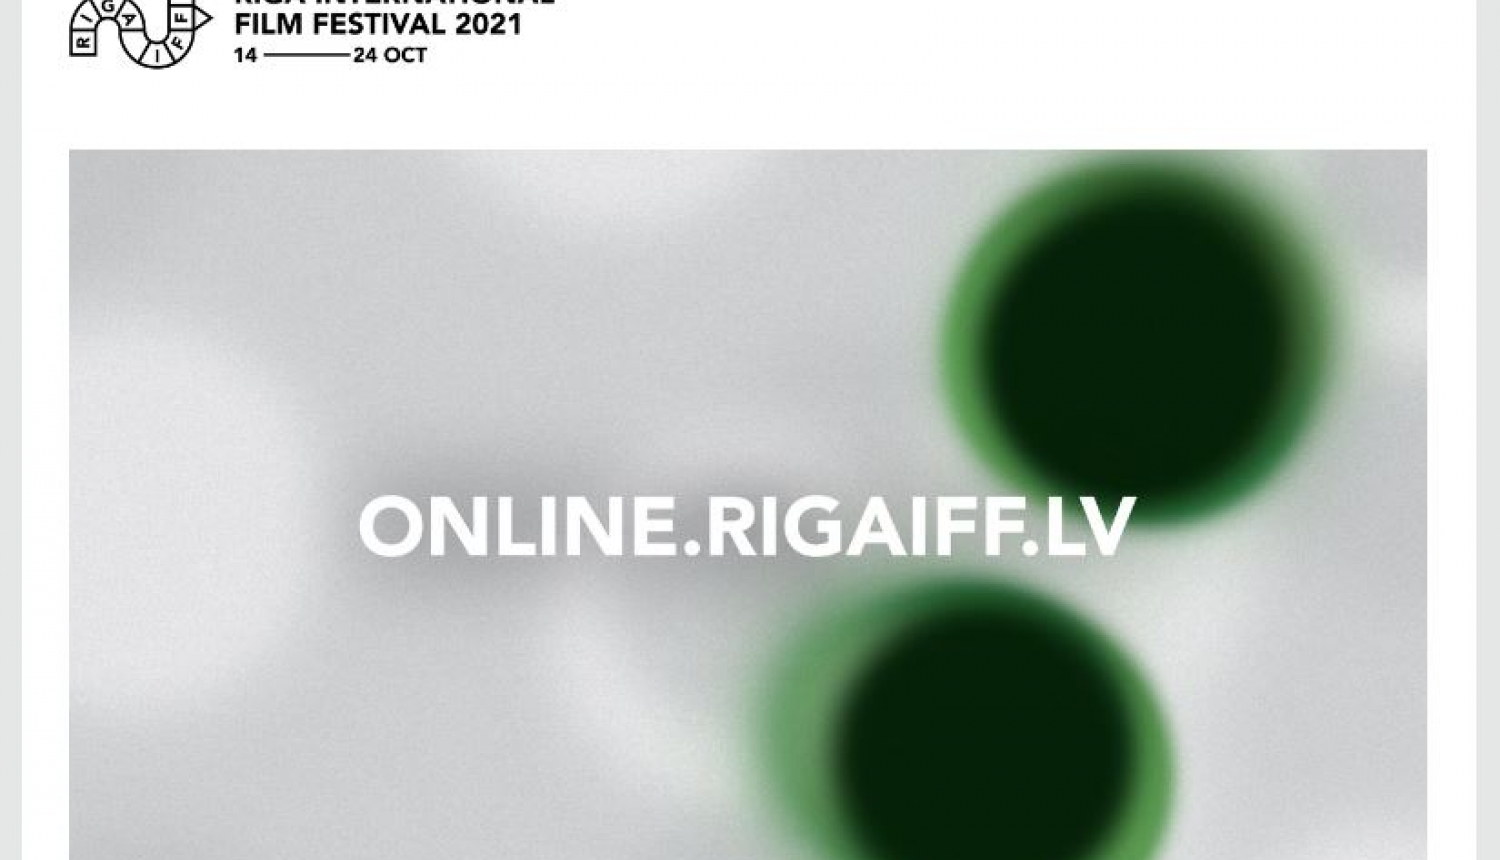 Riga IFF online